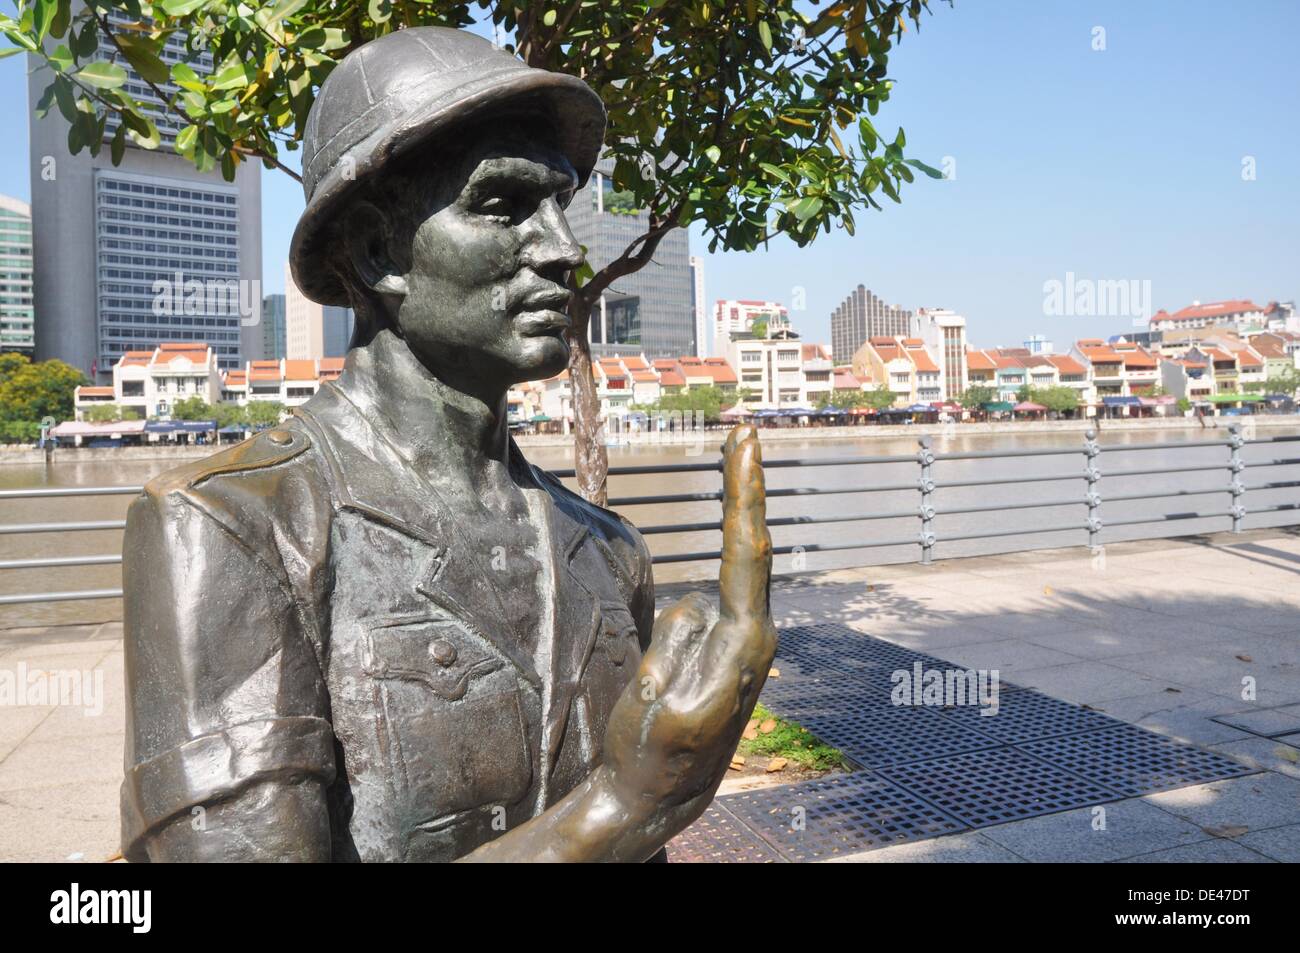 Singapur: parte de la escultura 'La Gran Emporium' a lo largo del banco del río Singapur Foto de stock